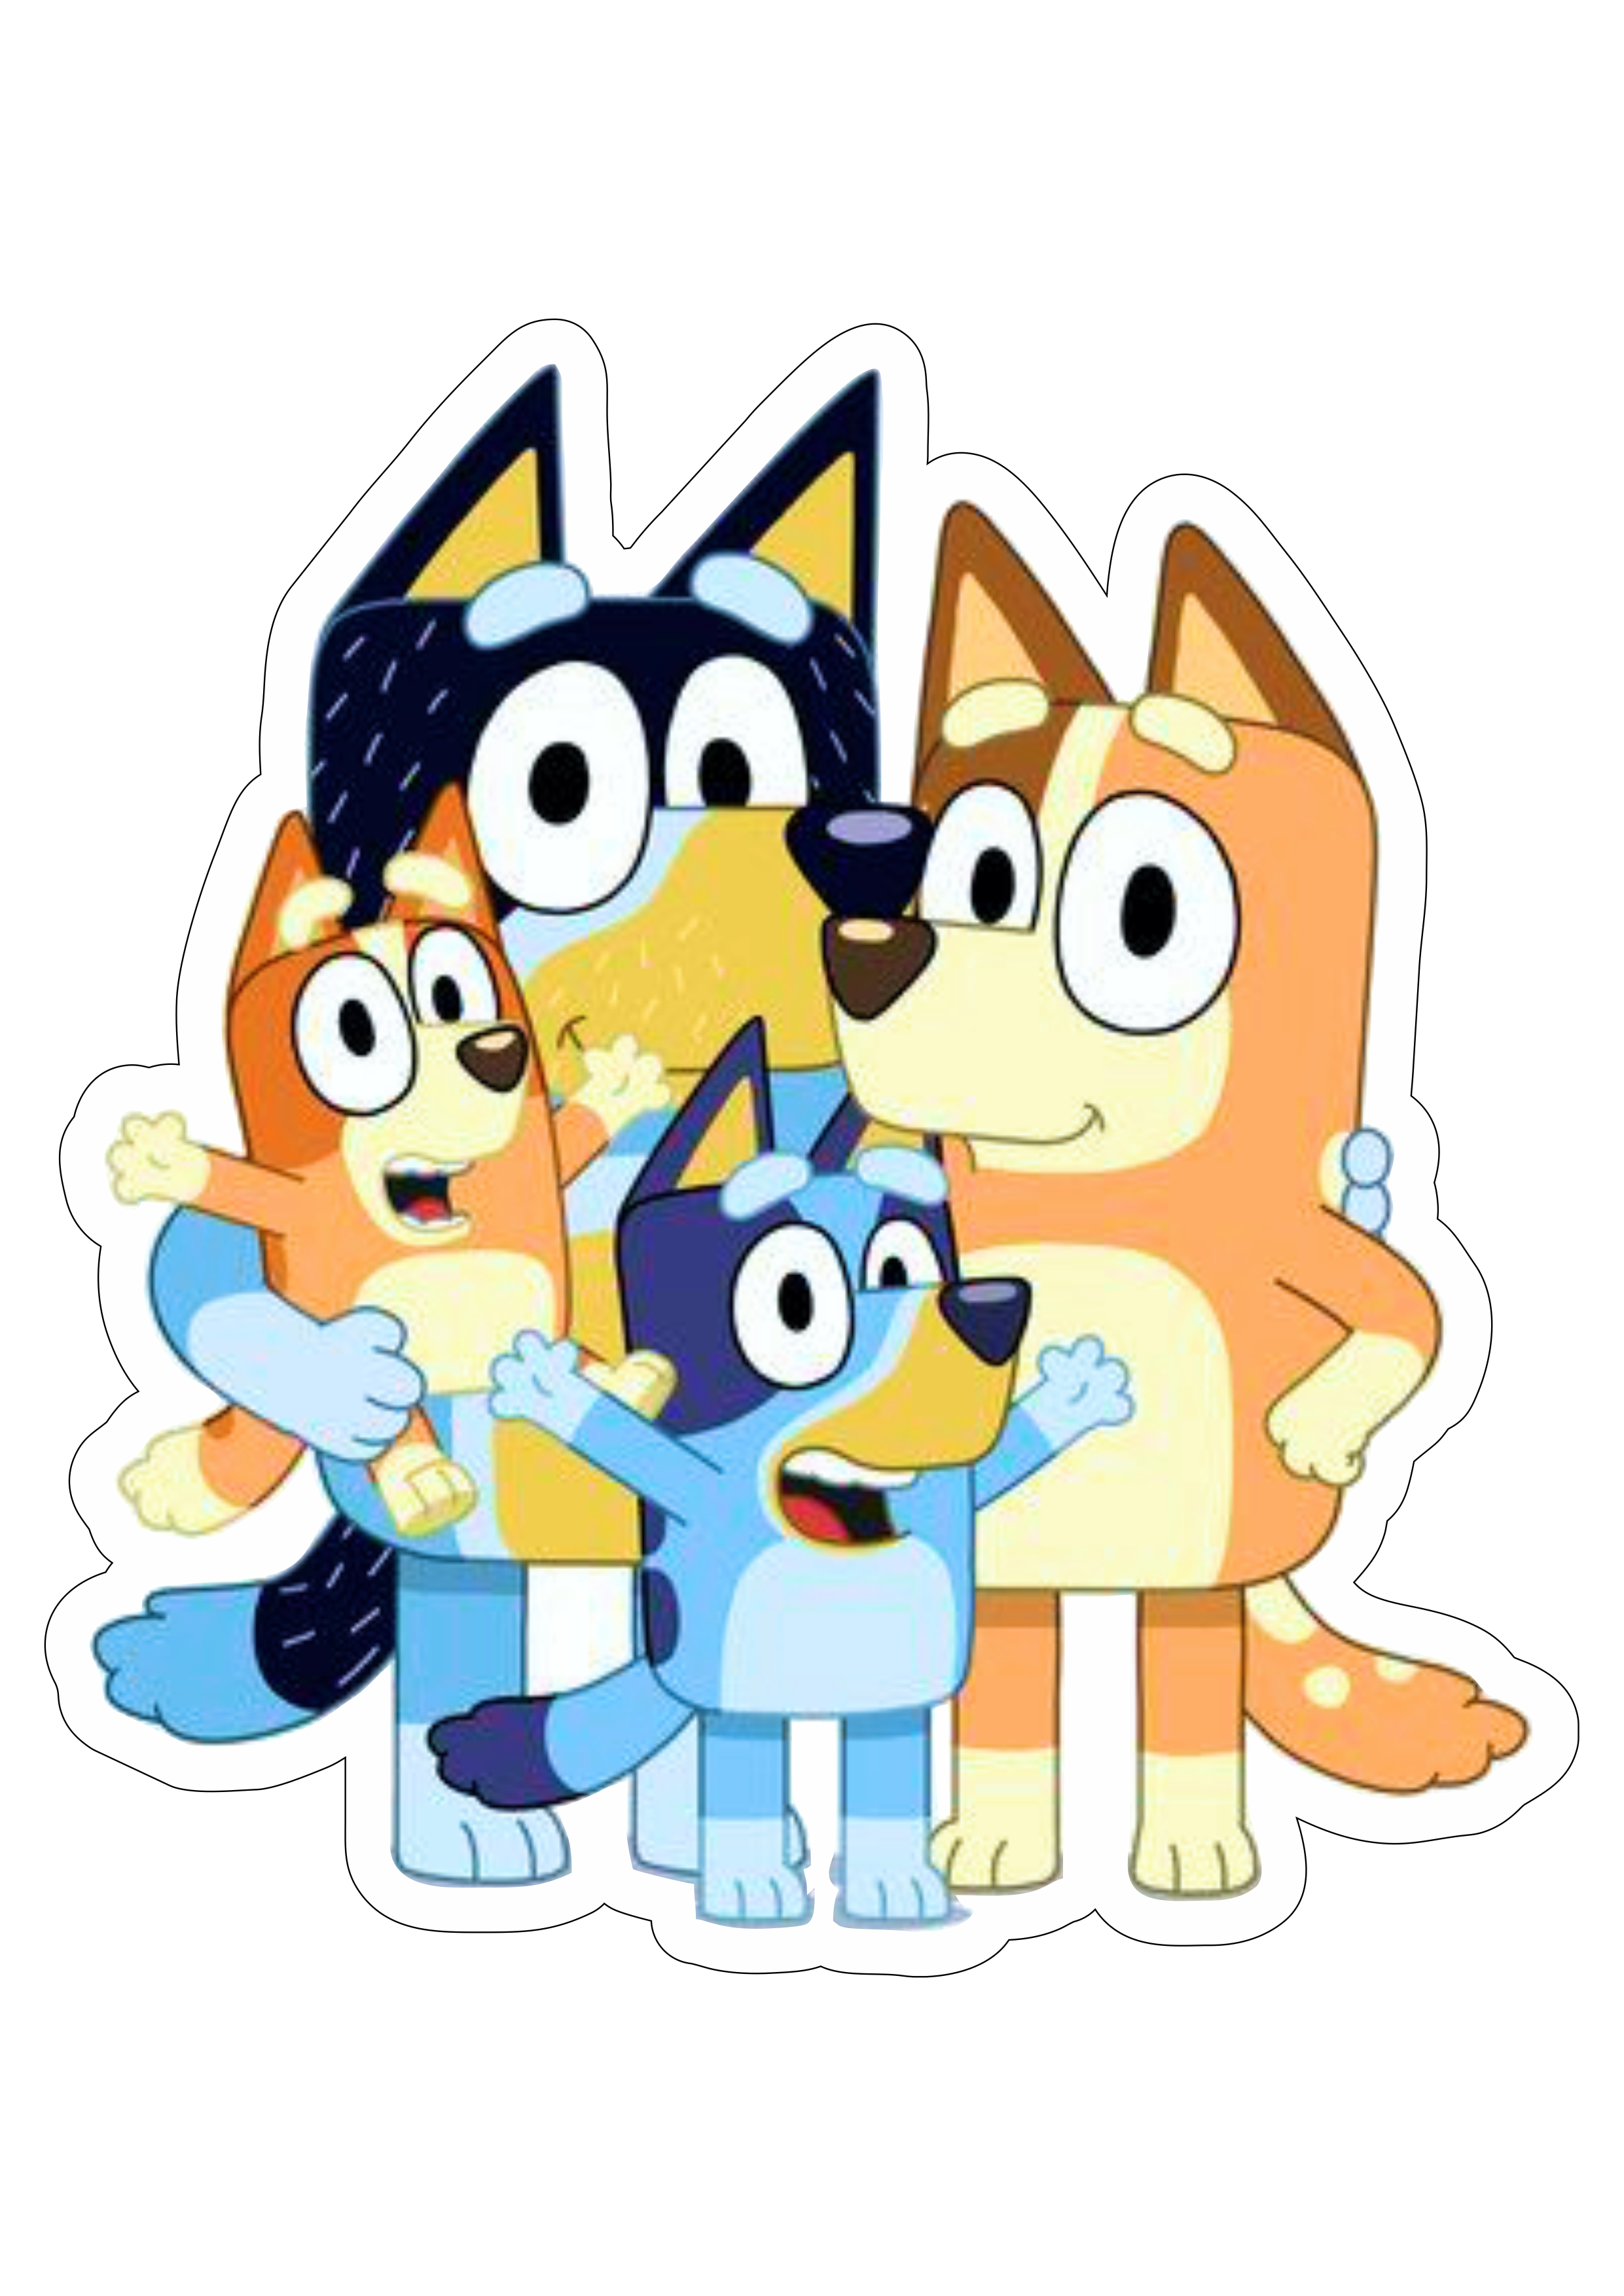 Bluey familia desenho de cachorros personagem fictício infantil divertido disney plus aniversário fundo transparente png